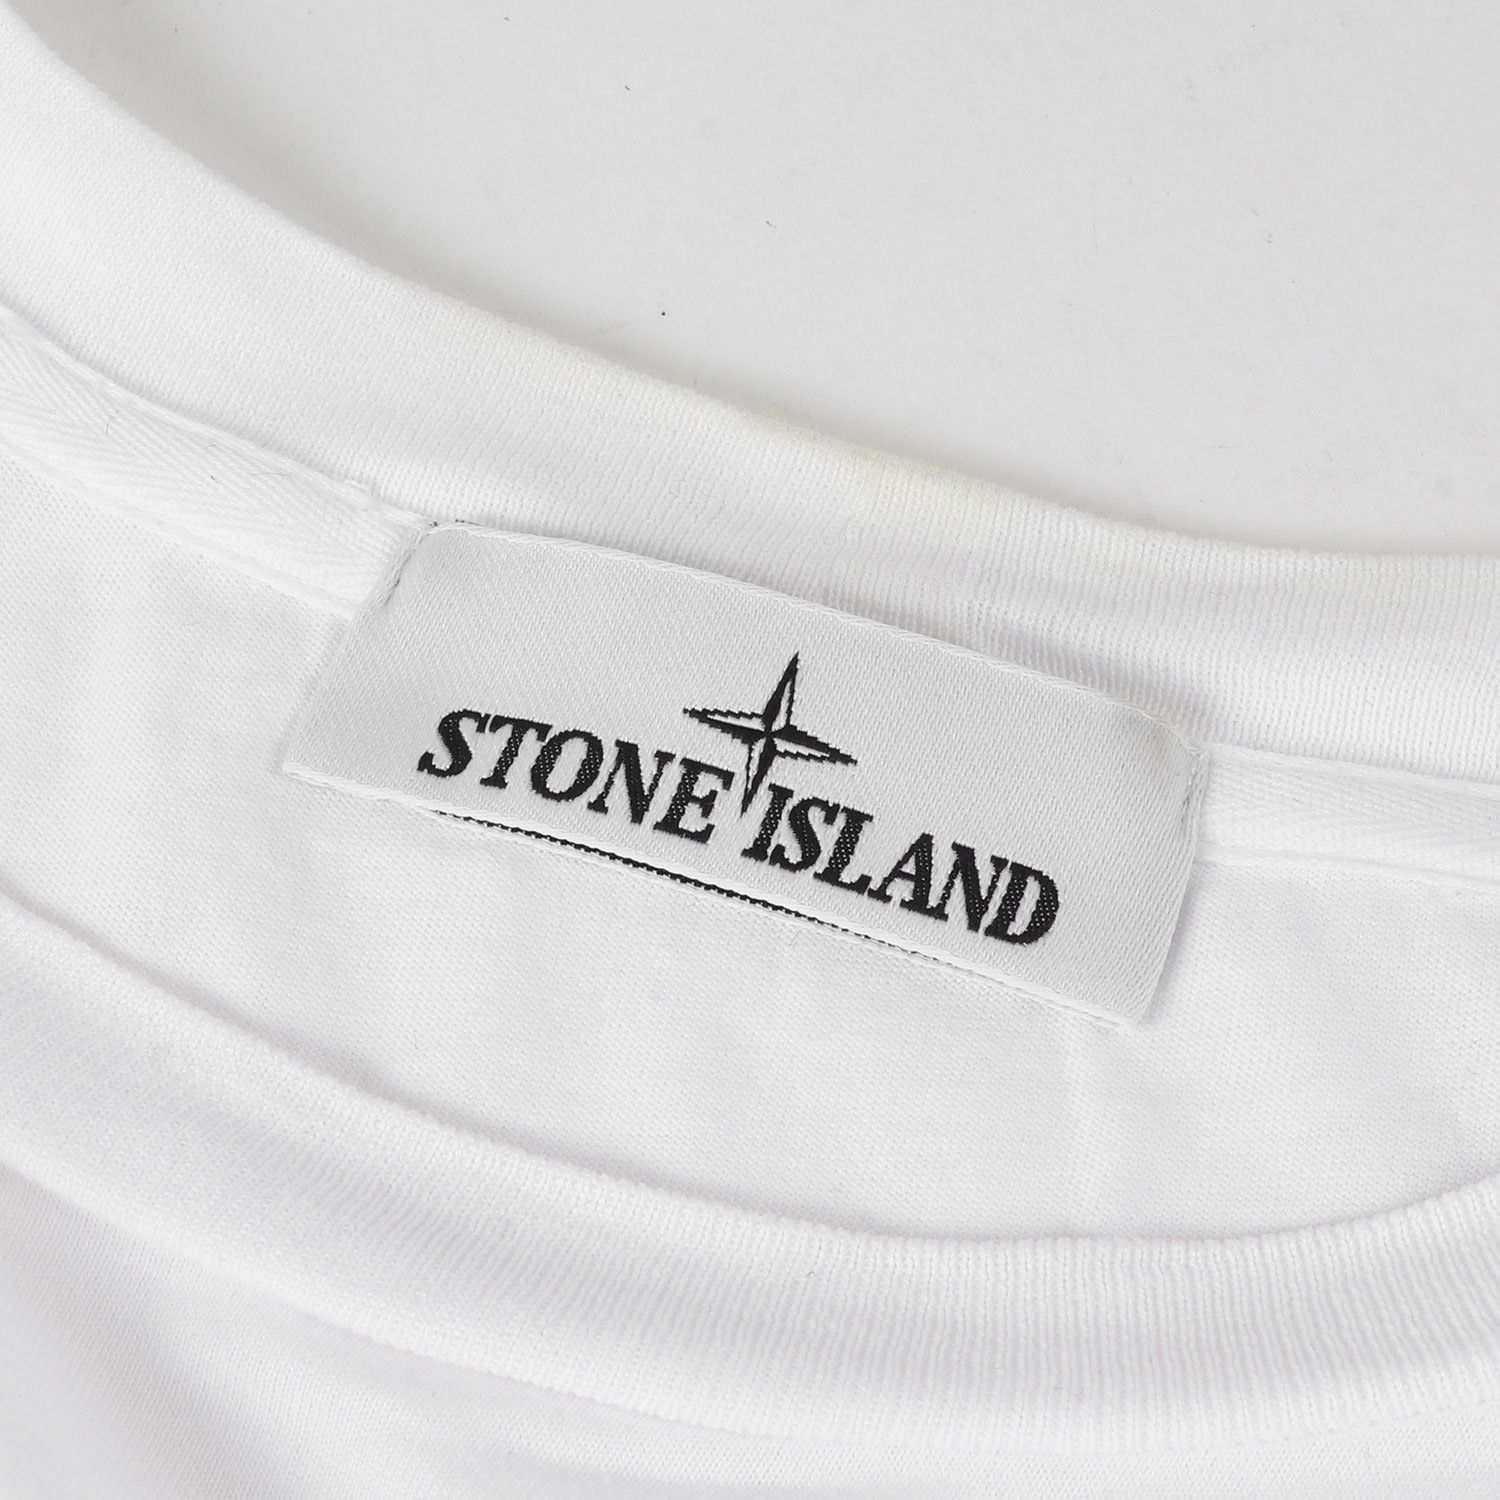 STONE ISLAND ストーンアイランド Tシャツ スクエアロゴ ワッペン ロングスリーブTシャツ 22AW トップス カットソー 長袖 ロンT  ホワイト 白 XL